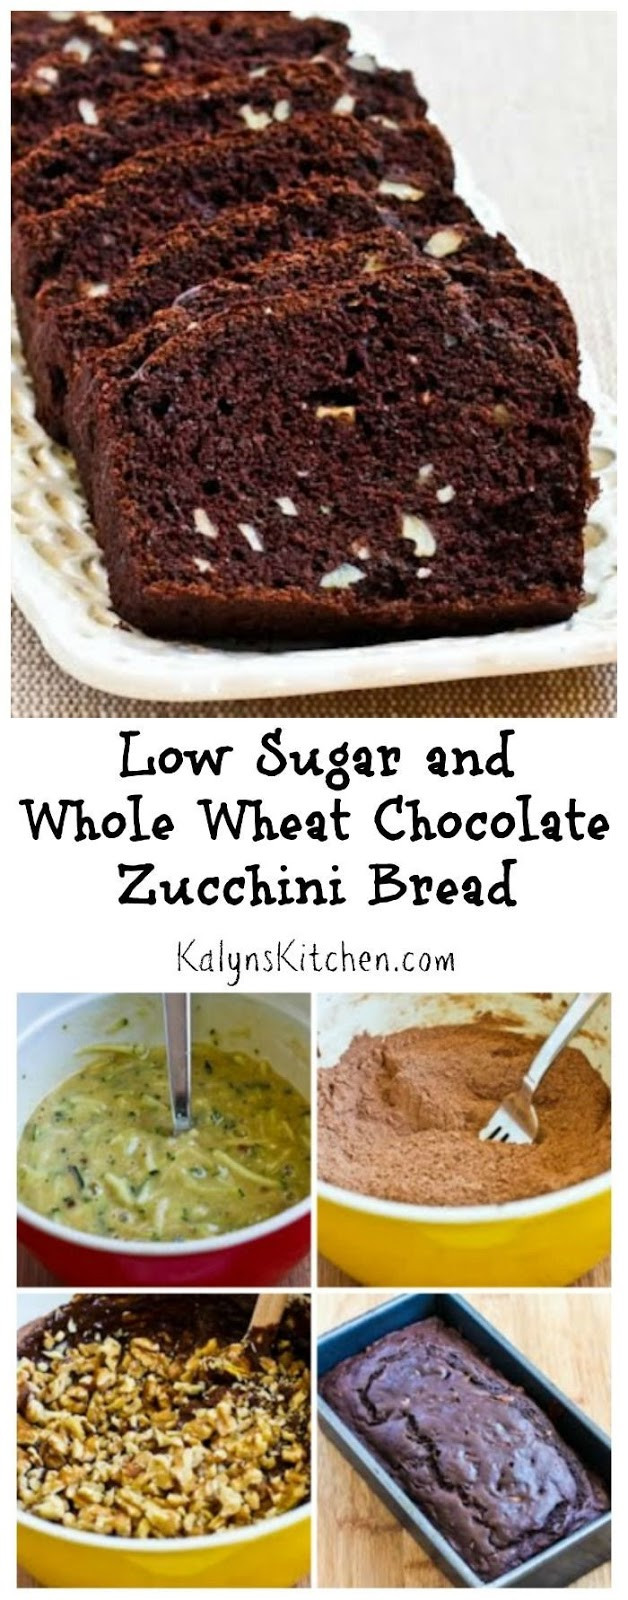 Low Sugar Zucchini Bread
 Low Sugar and Whole Wheat Chocolate Zucchini Bread Recipe